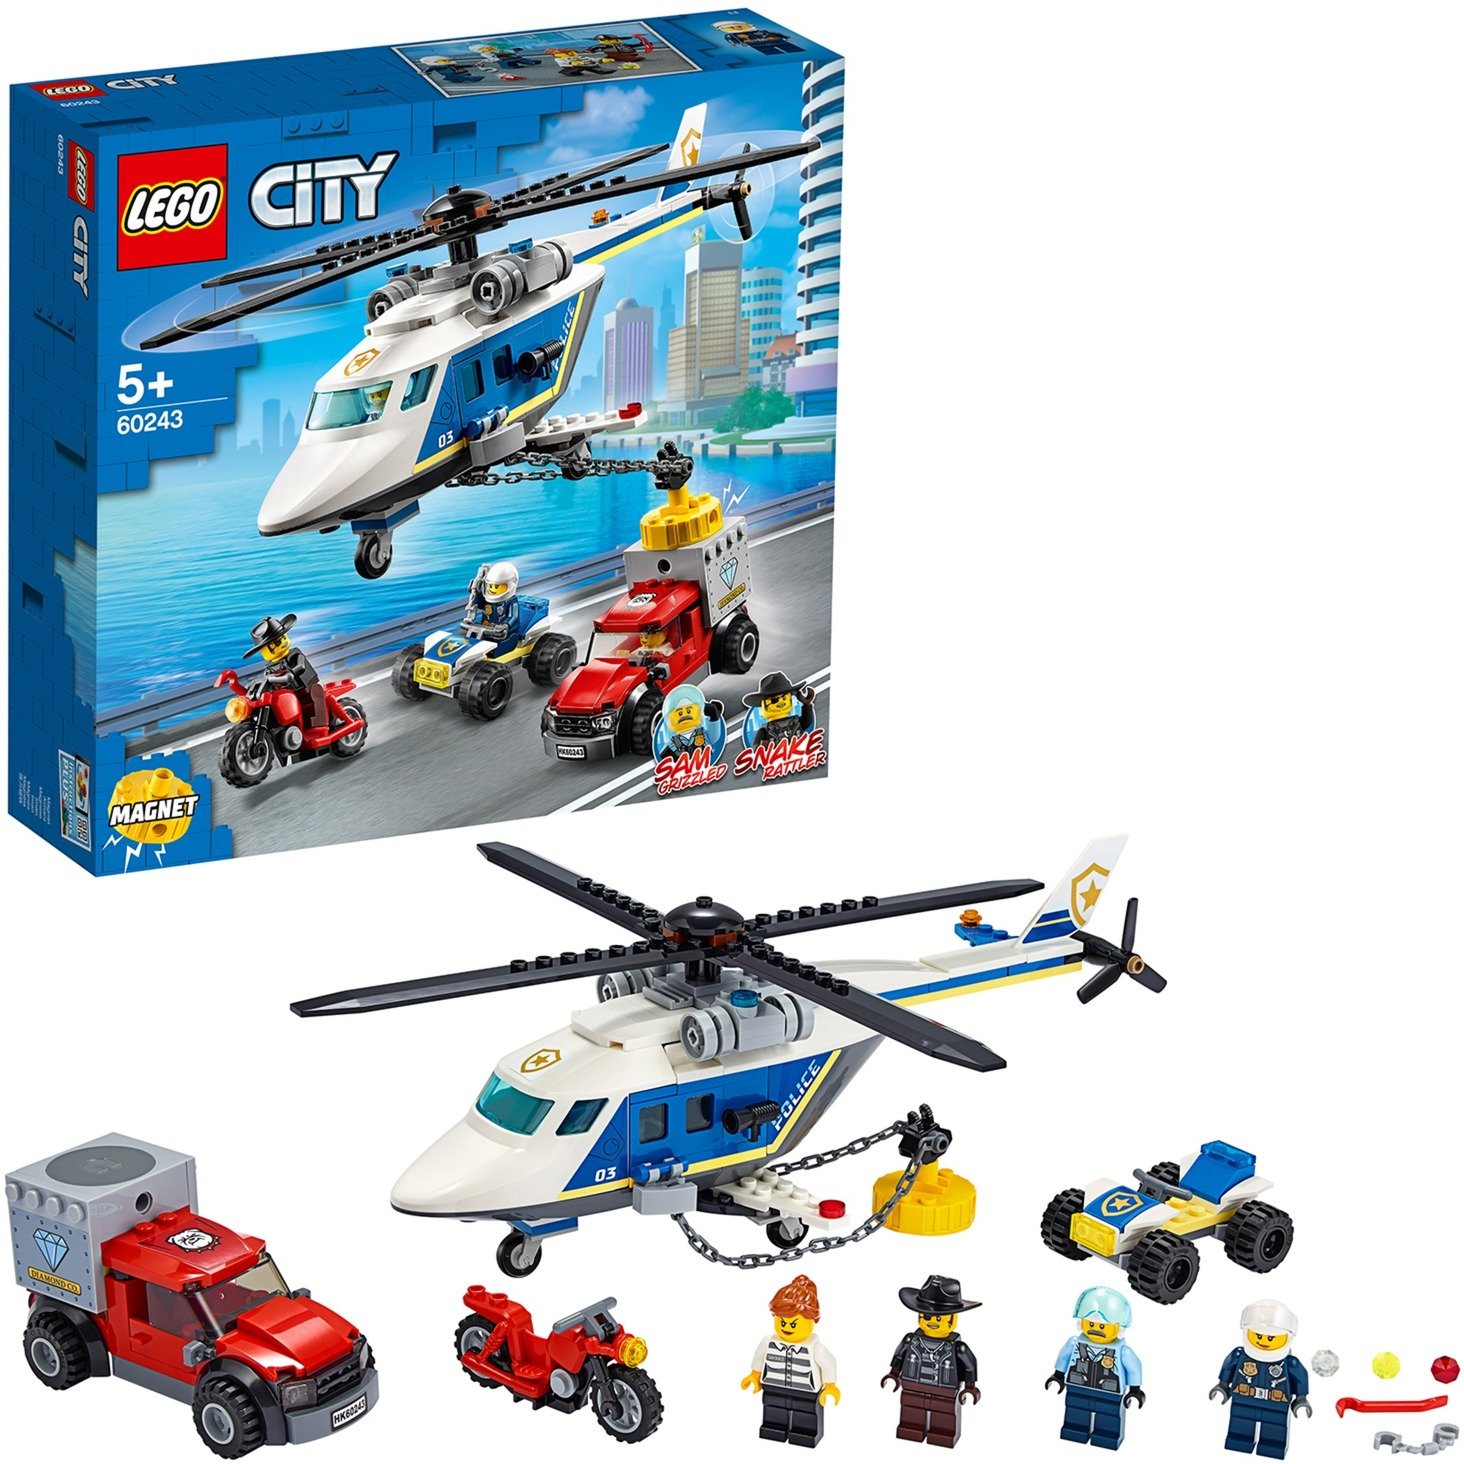 Spielzeug: Lego 60243 City Verfolgungsjagd mit dem Polizeihubschrauber